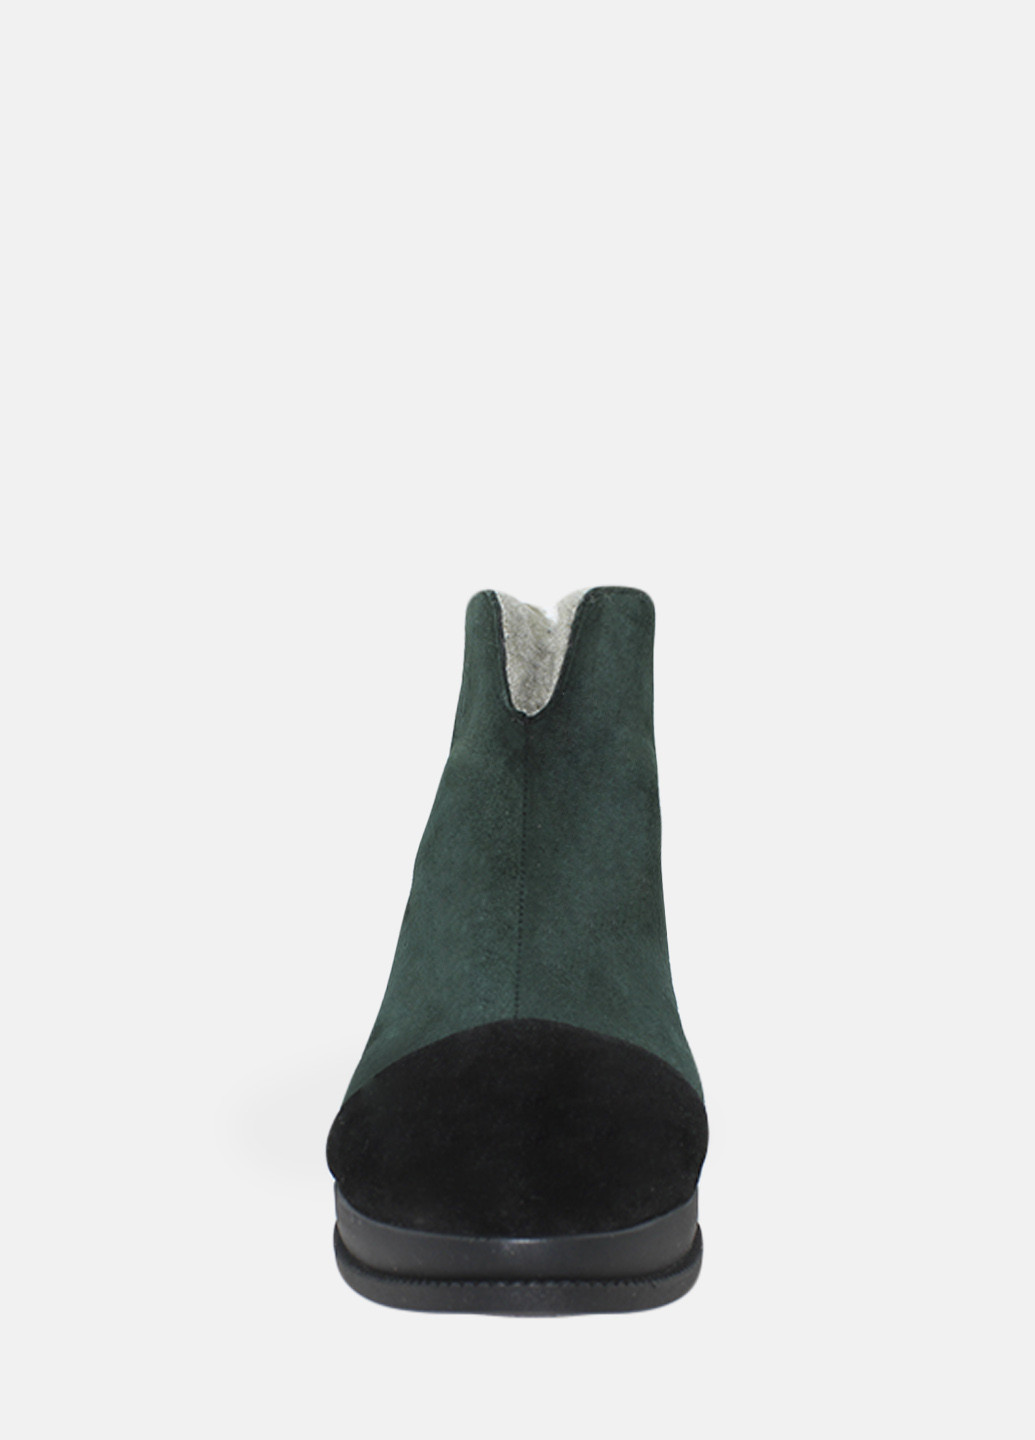 Зимние ботинки rp7762-11 зеленый Passati из натуральной замши